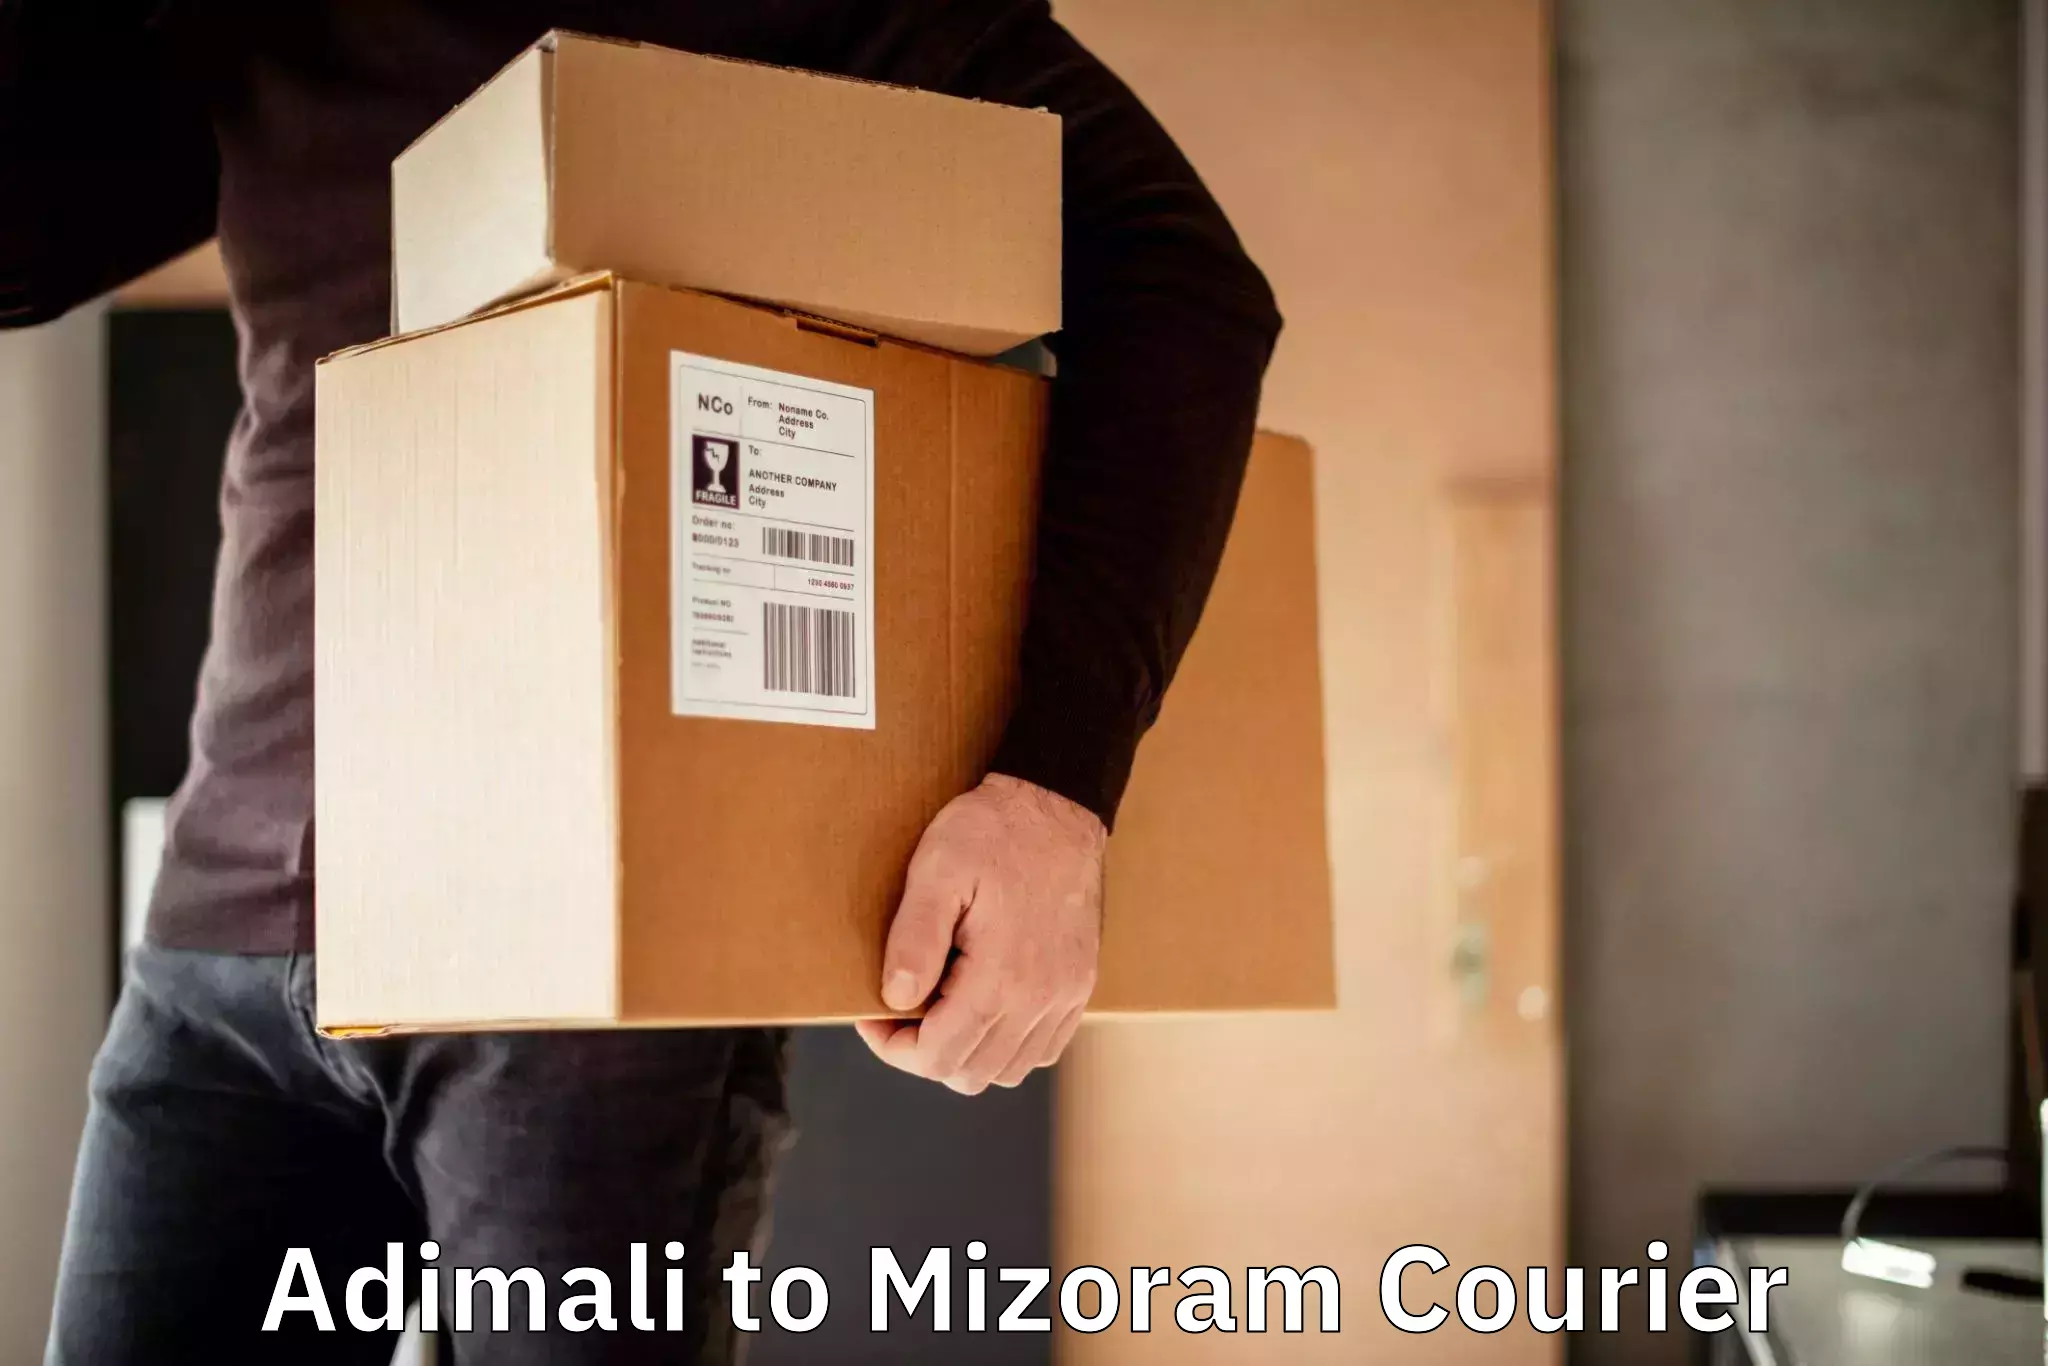 International shipping rates in Adimali to Mizoram